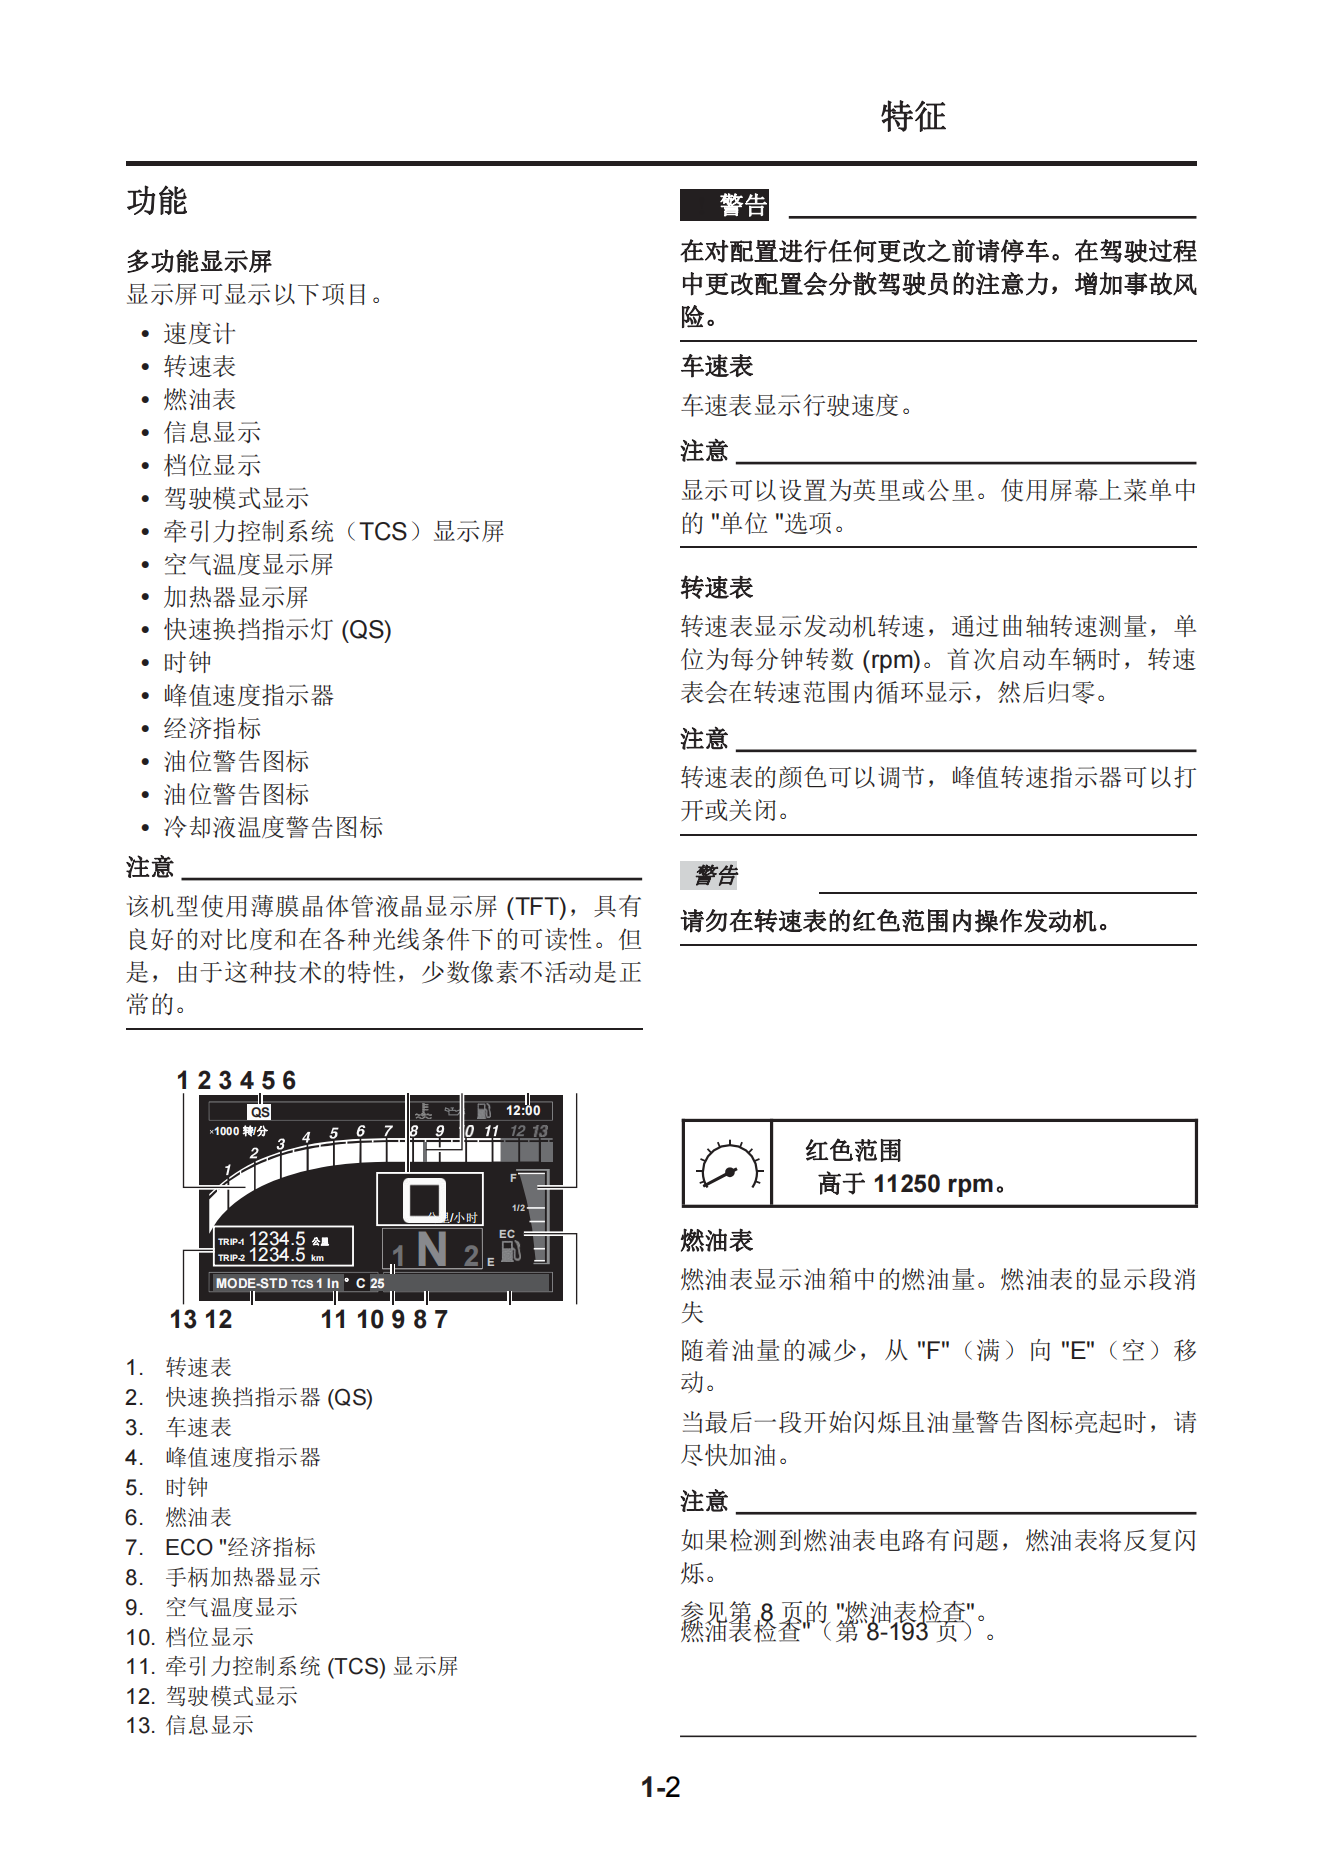 简体中文2019-2020年雅马哈tracer900GT维修手册插图2